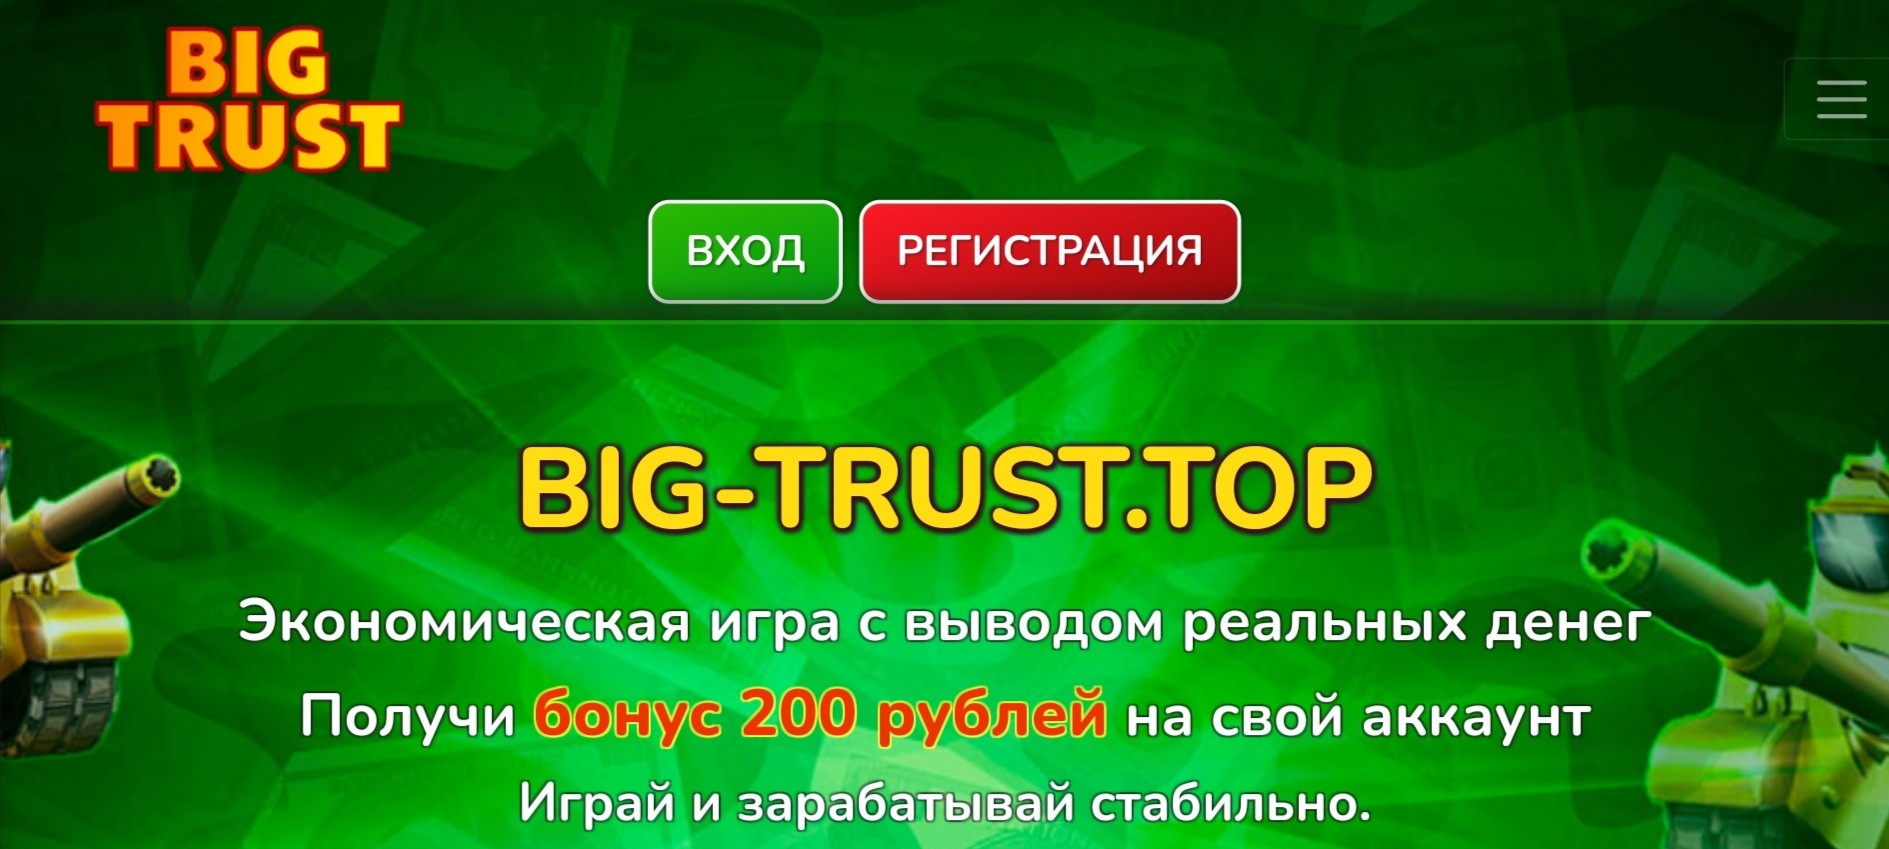 Обзор сайта Big trust